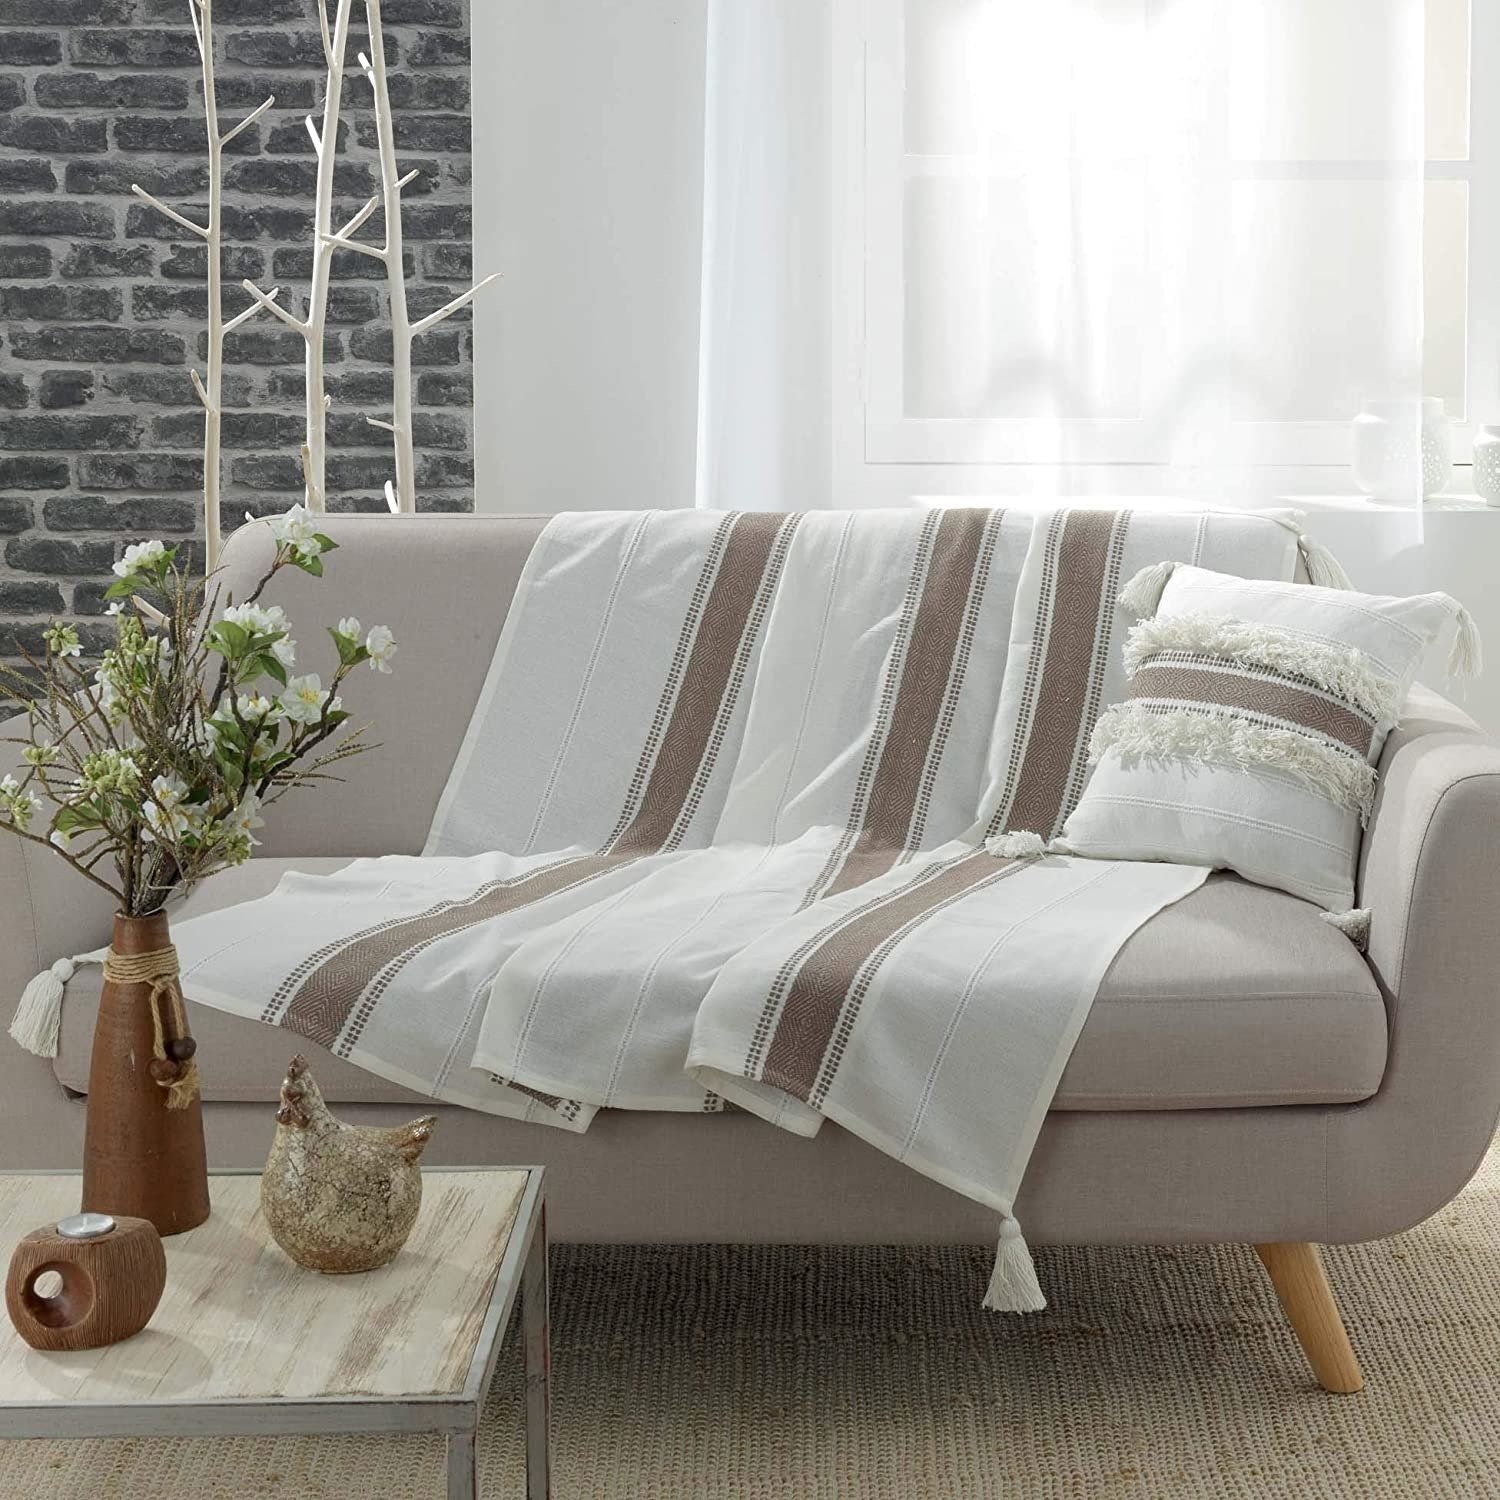 Douceur d\'intérieur Dekorativní přehoz na gauč v béžové proužky INDIRA, 125 x 150 cm - EMAKO.CZ s.r.o.